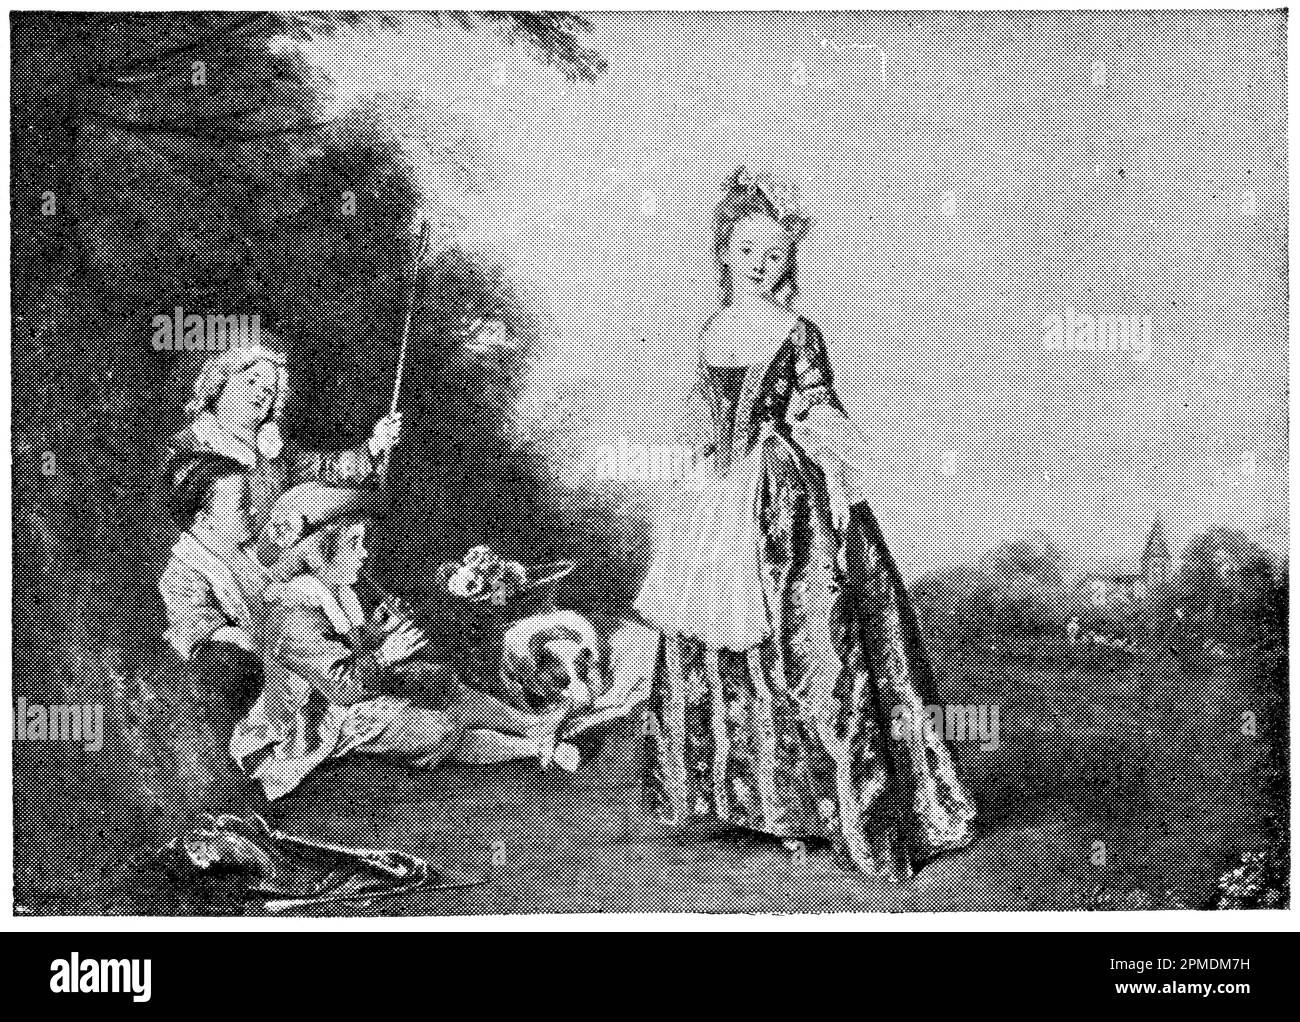 La danse par un peintre et dessinateur français Jean-Antoine Watteau. Publication du livre 'Meyers Konversations-Lexikon', Volume 2, Leipzig, Allemagne, 1910 Banque D'Images